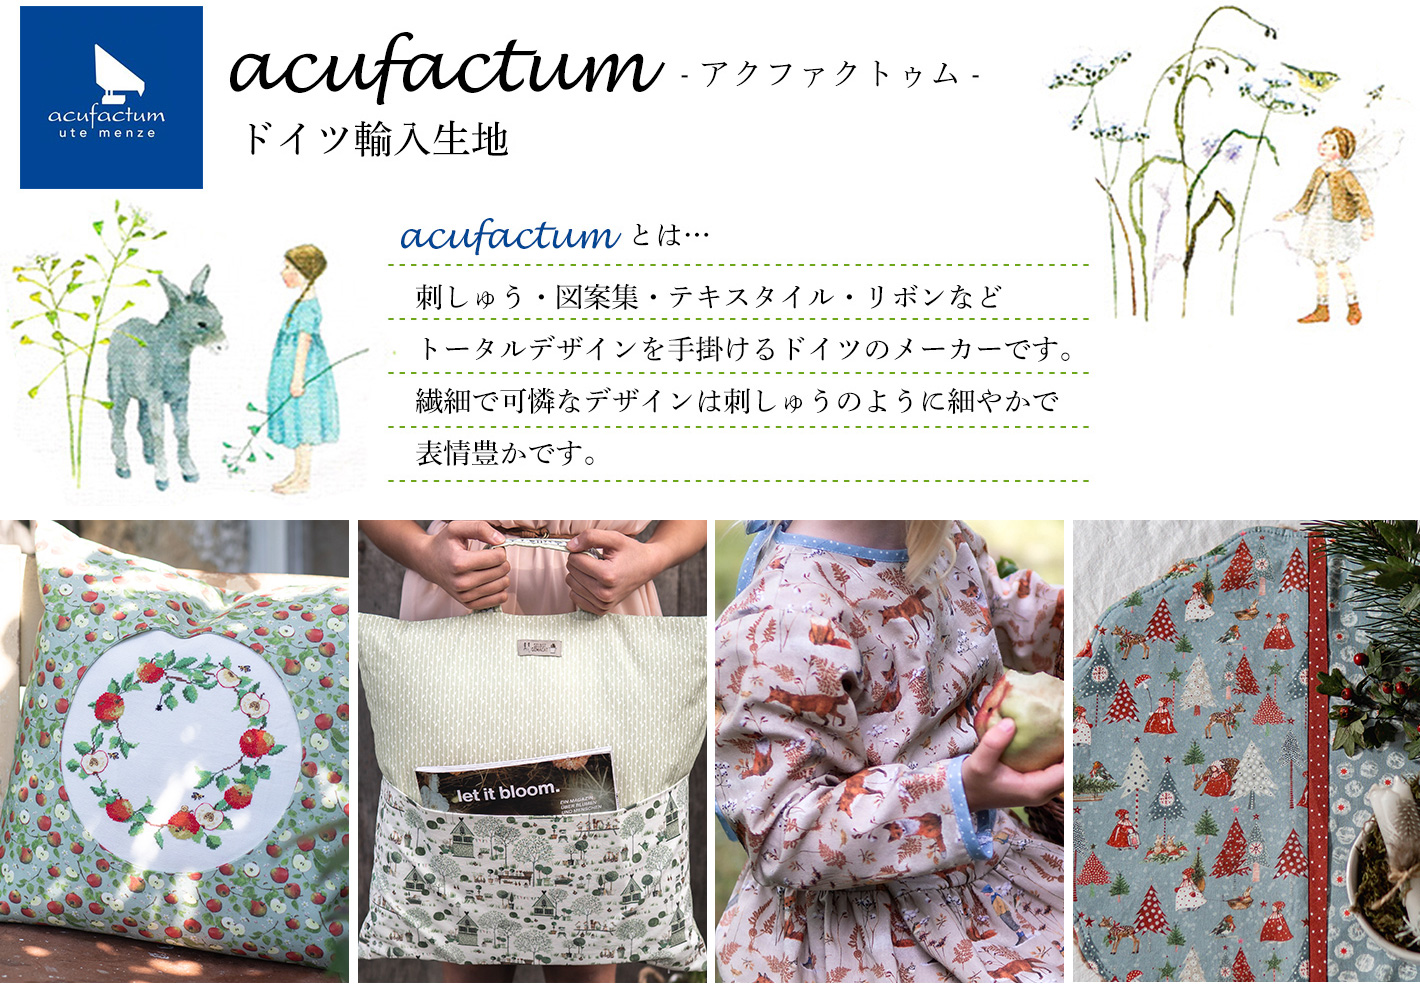 acufactum/ドイツ「手芸材料の卸売りサイトChuko Online」